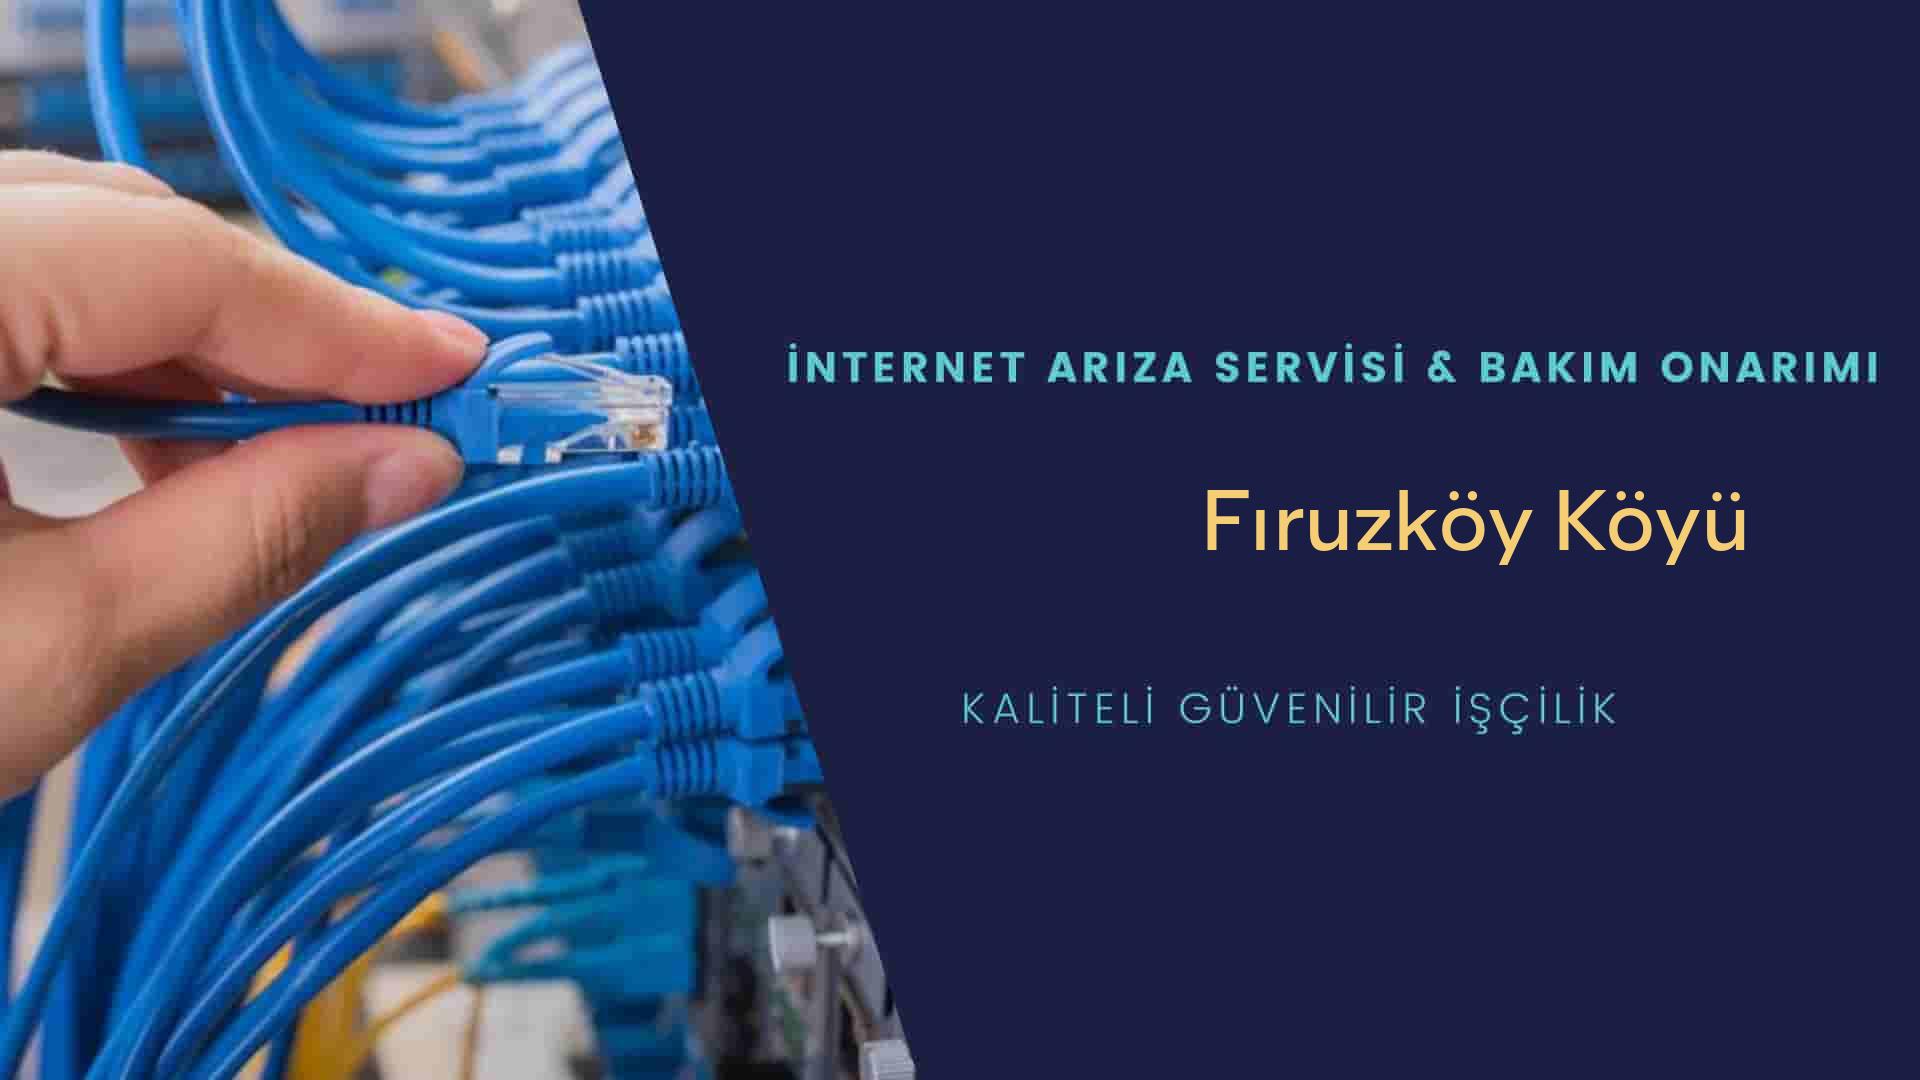 Fıruzköy Köyü internet kablosu çekimi yapan yerler veya elektrikçiler mi? arıyorsunuz doğru yerdesiniz o zaman sizlere 7/24 yardımcı olacak profesyonel ustalarımız bir telefon kadar yakındır size.